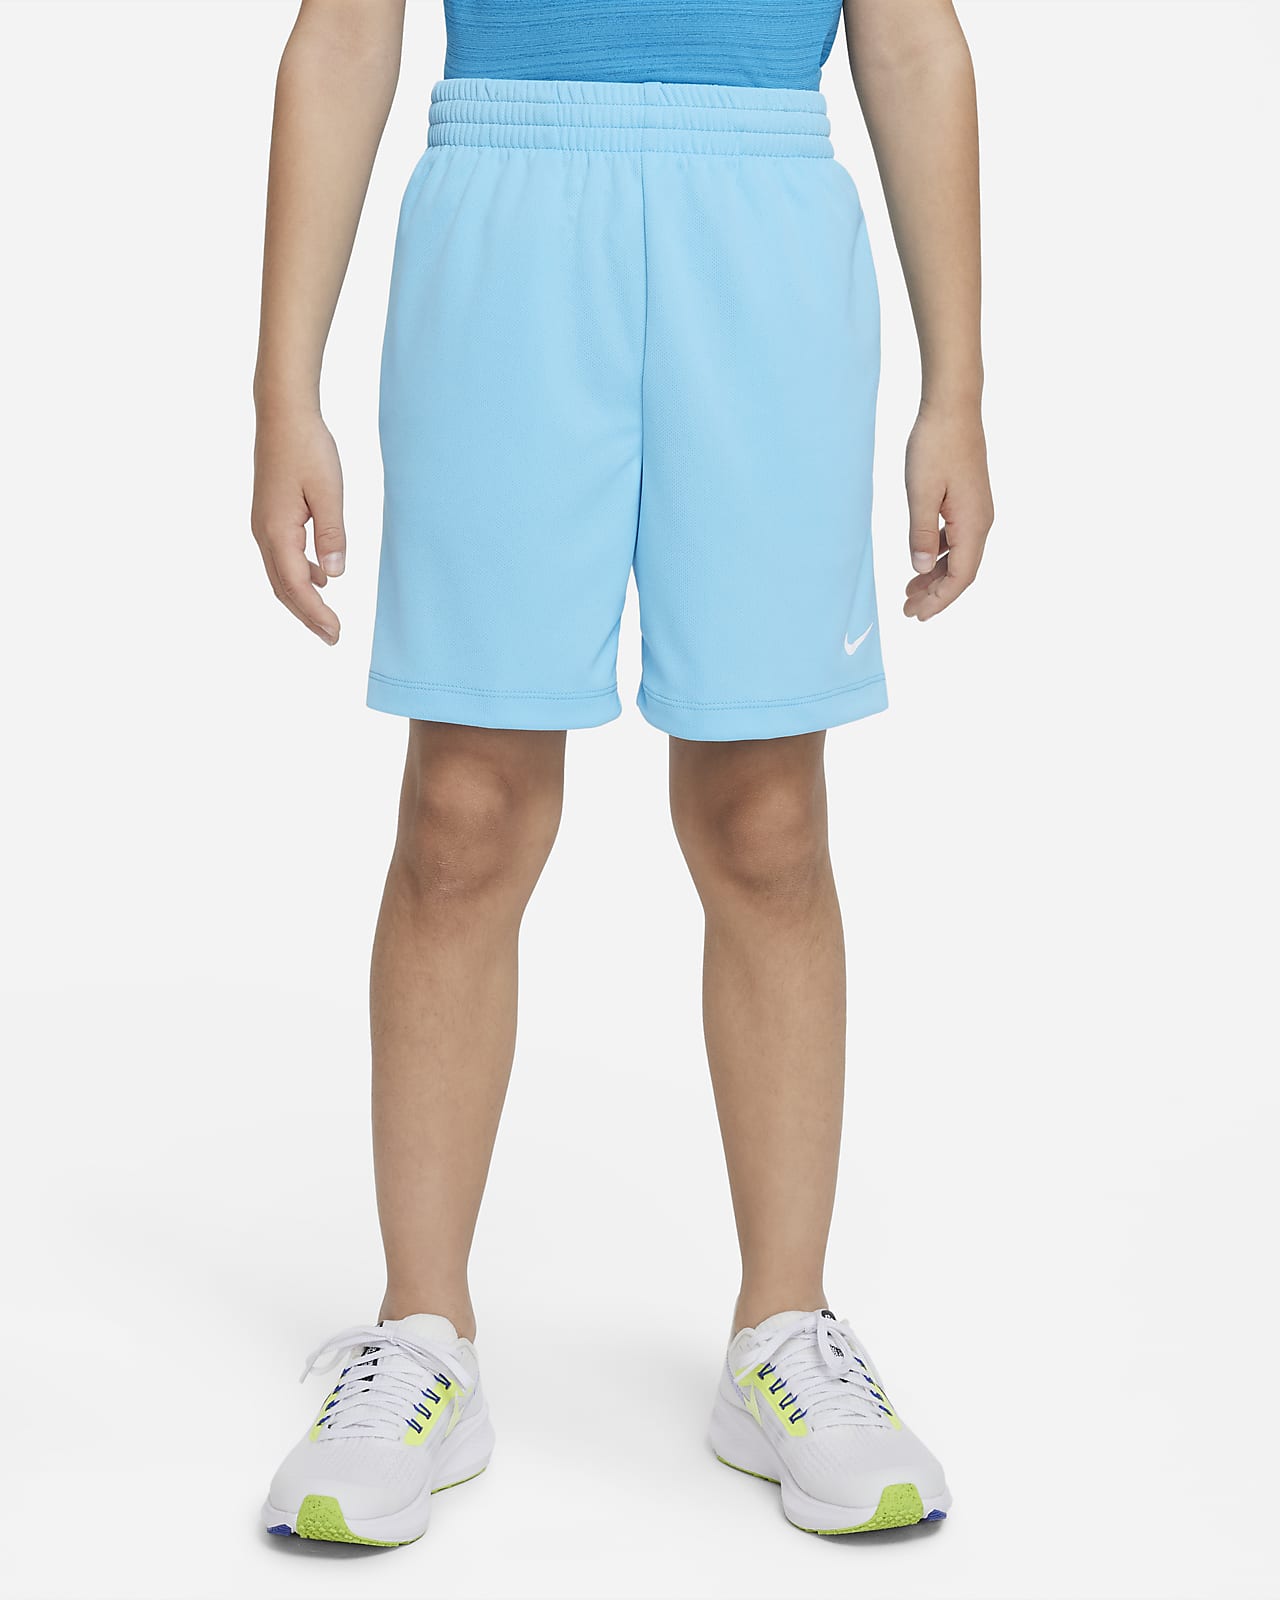 Nike Dri-FIT Multi+ Older Kids' (Boys') Training Shorts. Nike HR